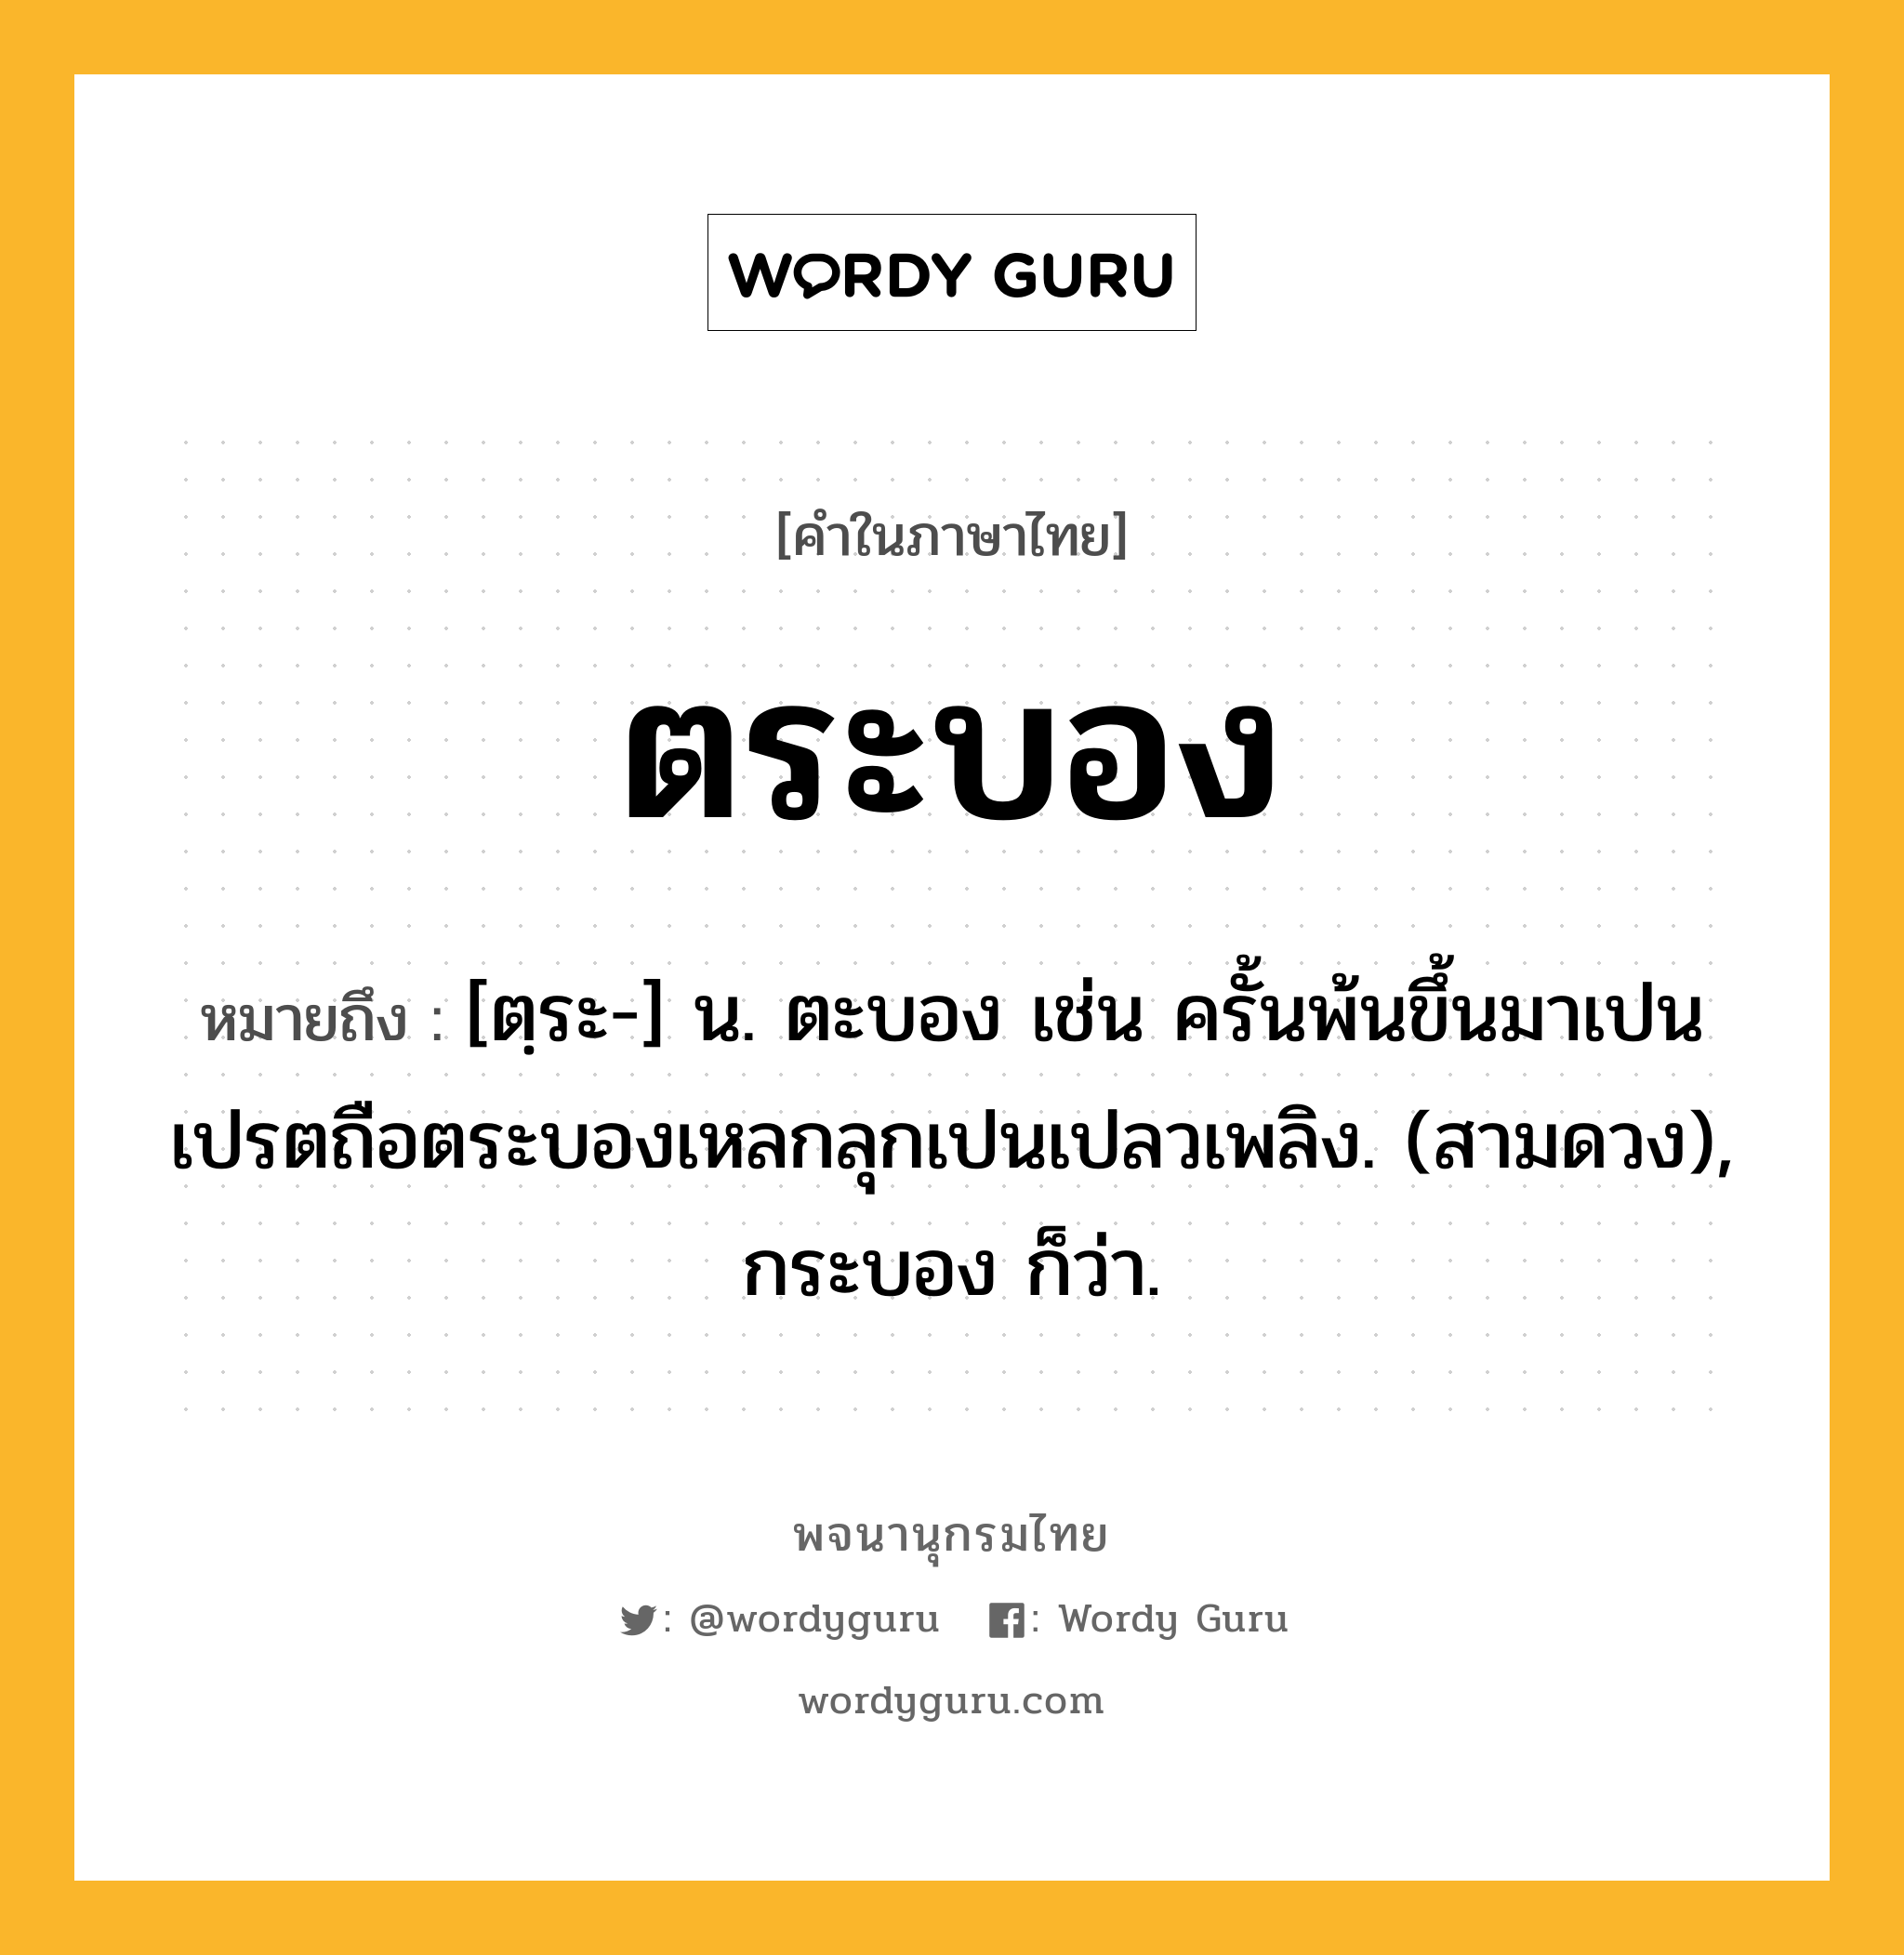 ตระบอง หมายถึงอะไร?, คำในภาษาไทย ตระบอง หมายถึง [ตฺระ-] น. ตะบอง เช่น ครั้นพ้นขึ้นมาเปนเปรตถือตระบองเหลกลุกเปนเปลวเพลิง. (สามดวง), กระบอง ก็ว่า.